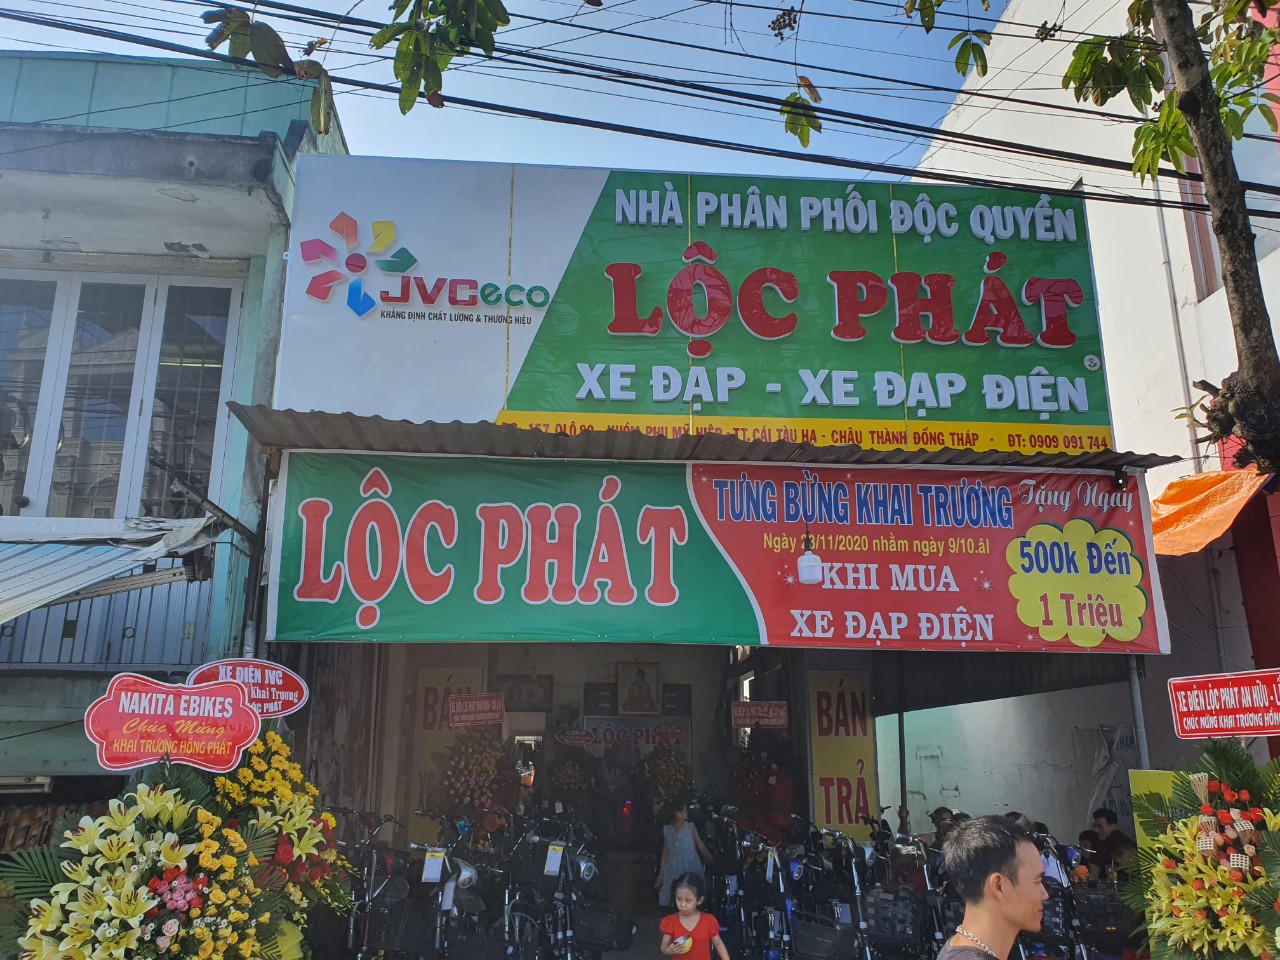 Tặng ngay từ 500k đến 1 triệu khi mua xe đạp điện tại Lộc Phát trong tuần khai trương